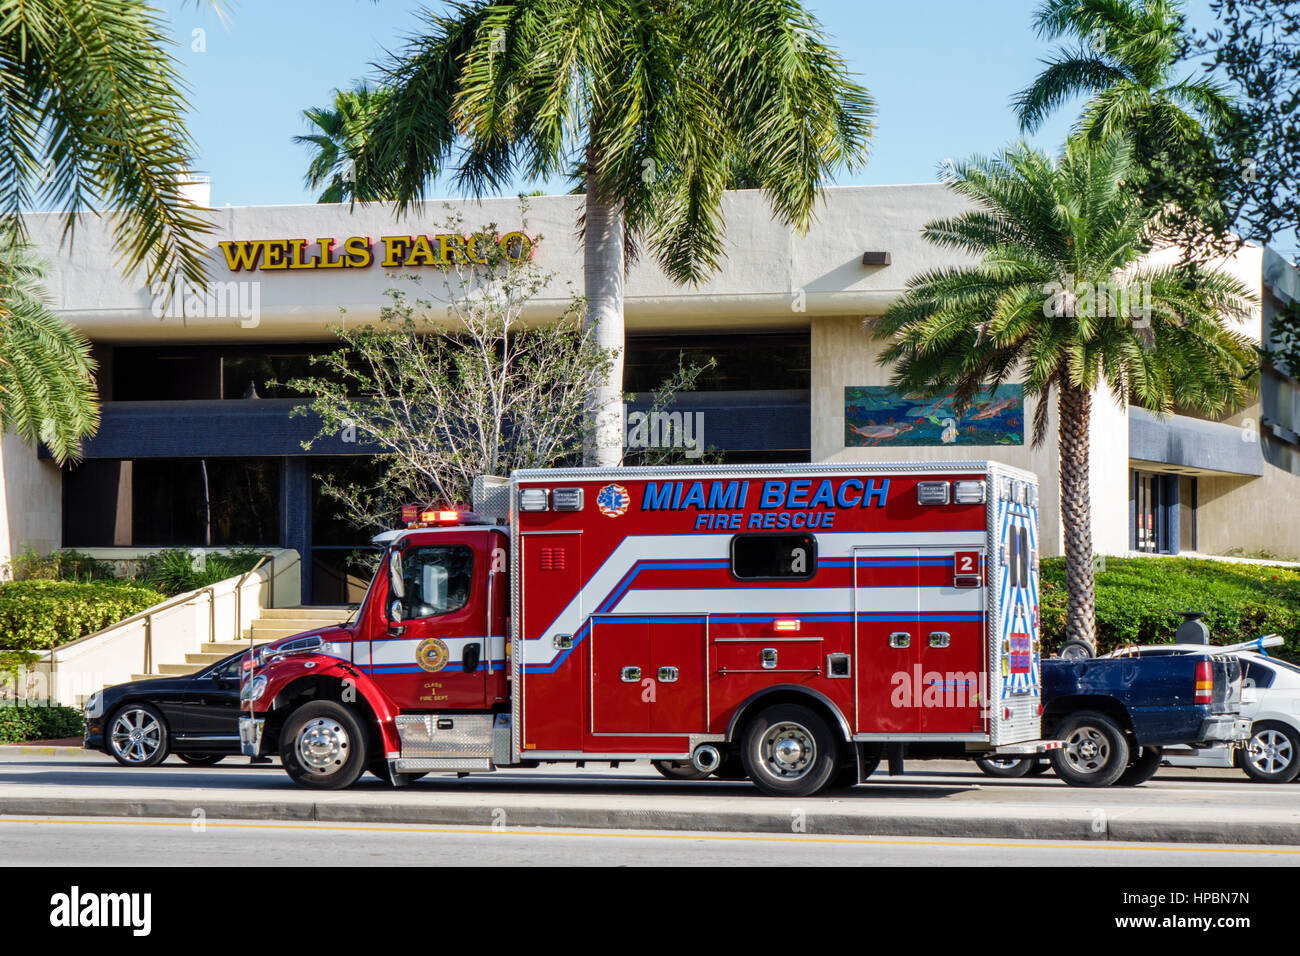 Miami Beach Florida,scène de rue,circulation,sauvetage incendie,camion,véhicule d'urgence,FL161215111 Banque D'Images